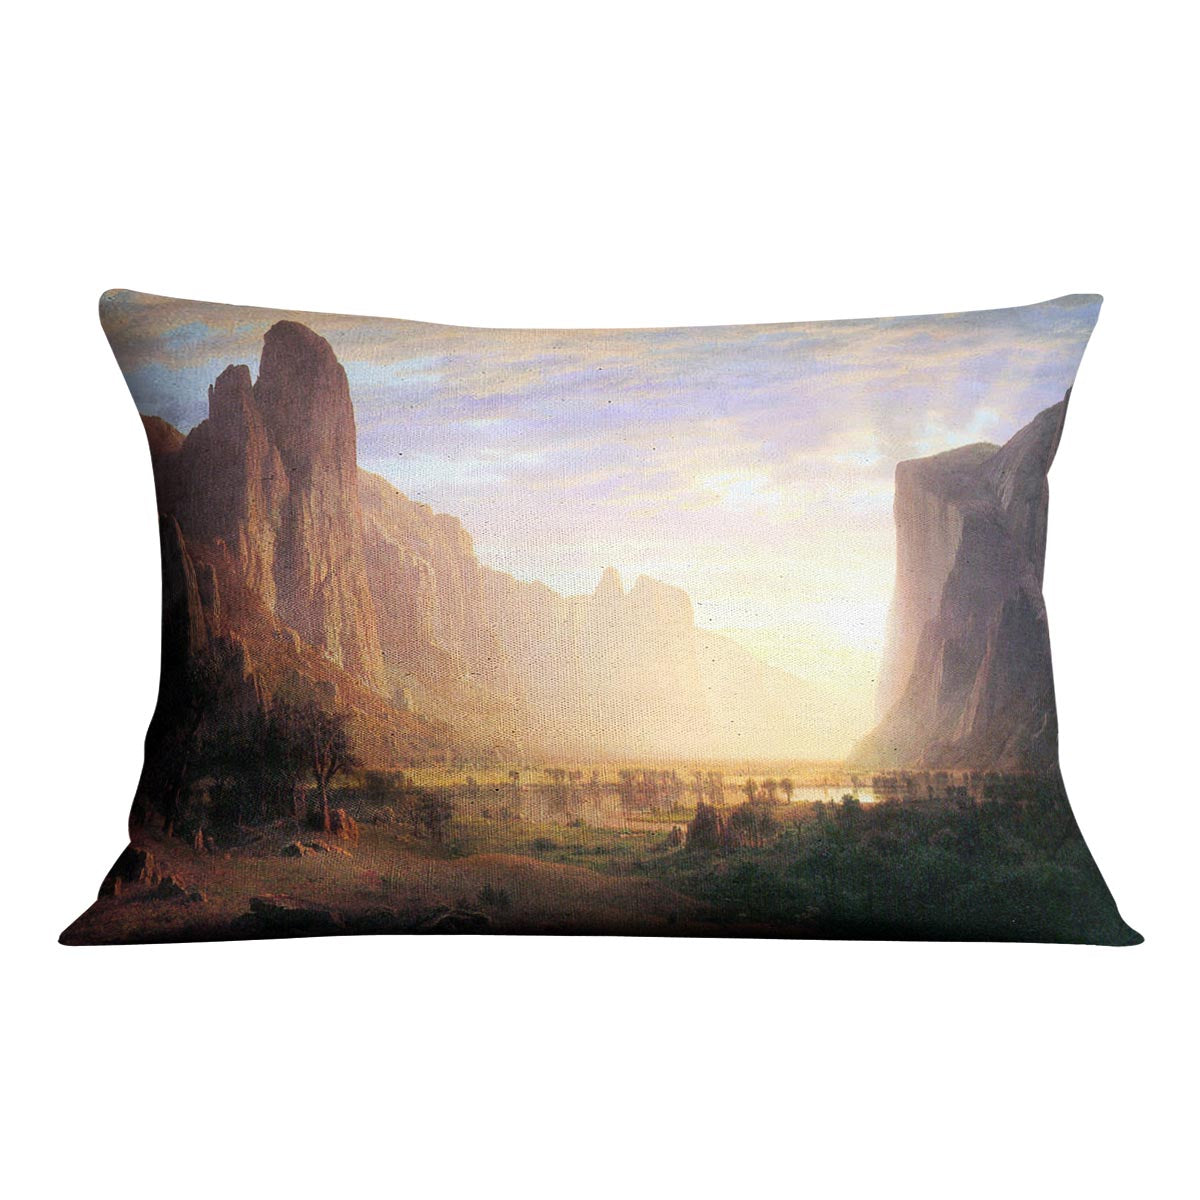 Yosemite Valley 3 by Bierstadt Cushion - Canvas Art Rocks - 4